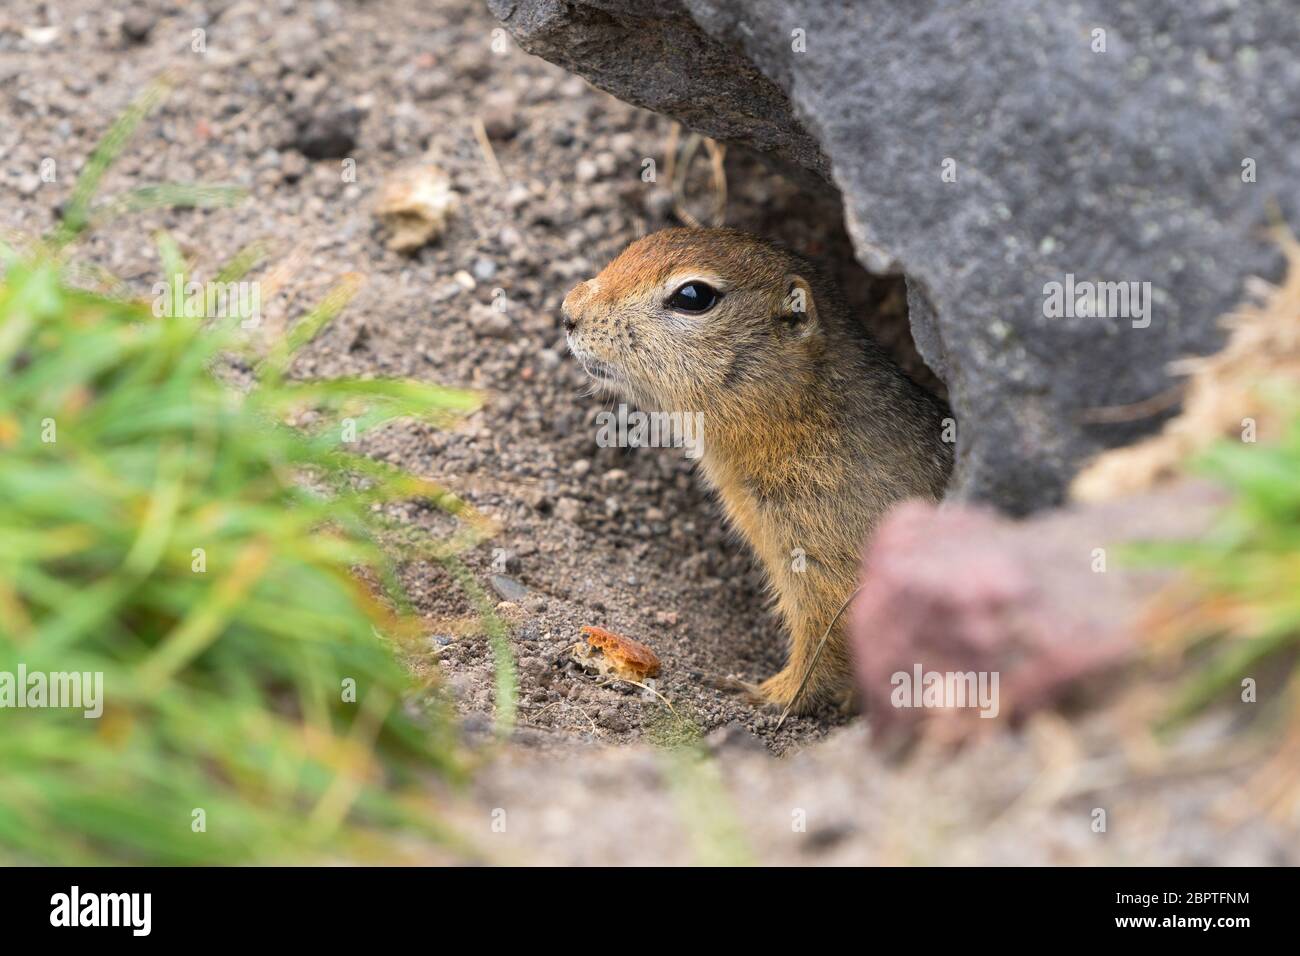 Curieux mais prudent animal sauvage l'écureuil arctique sort de trou sous la pierre, regardant autour de sorte à ne pas tomber dans les mâchoires de bêtes prédateurs Banque D'Images